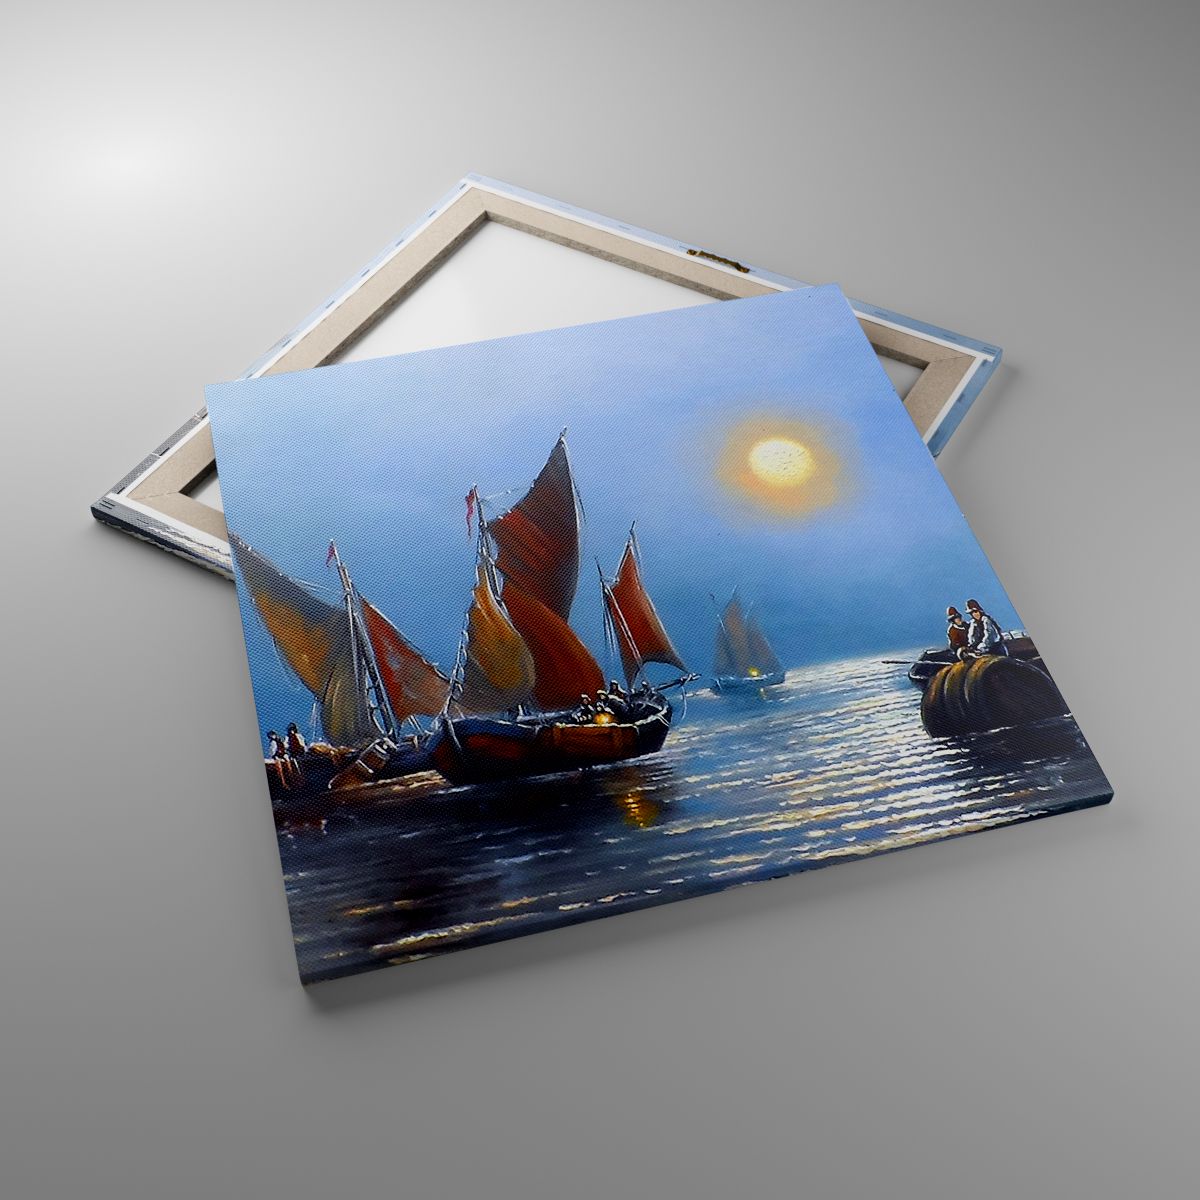 Obrazy Wschód Słońca, Obrazy Łódź Rybacka, Obrazy Połów Ryb, Obrazy Ocean, Obrazy Morze